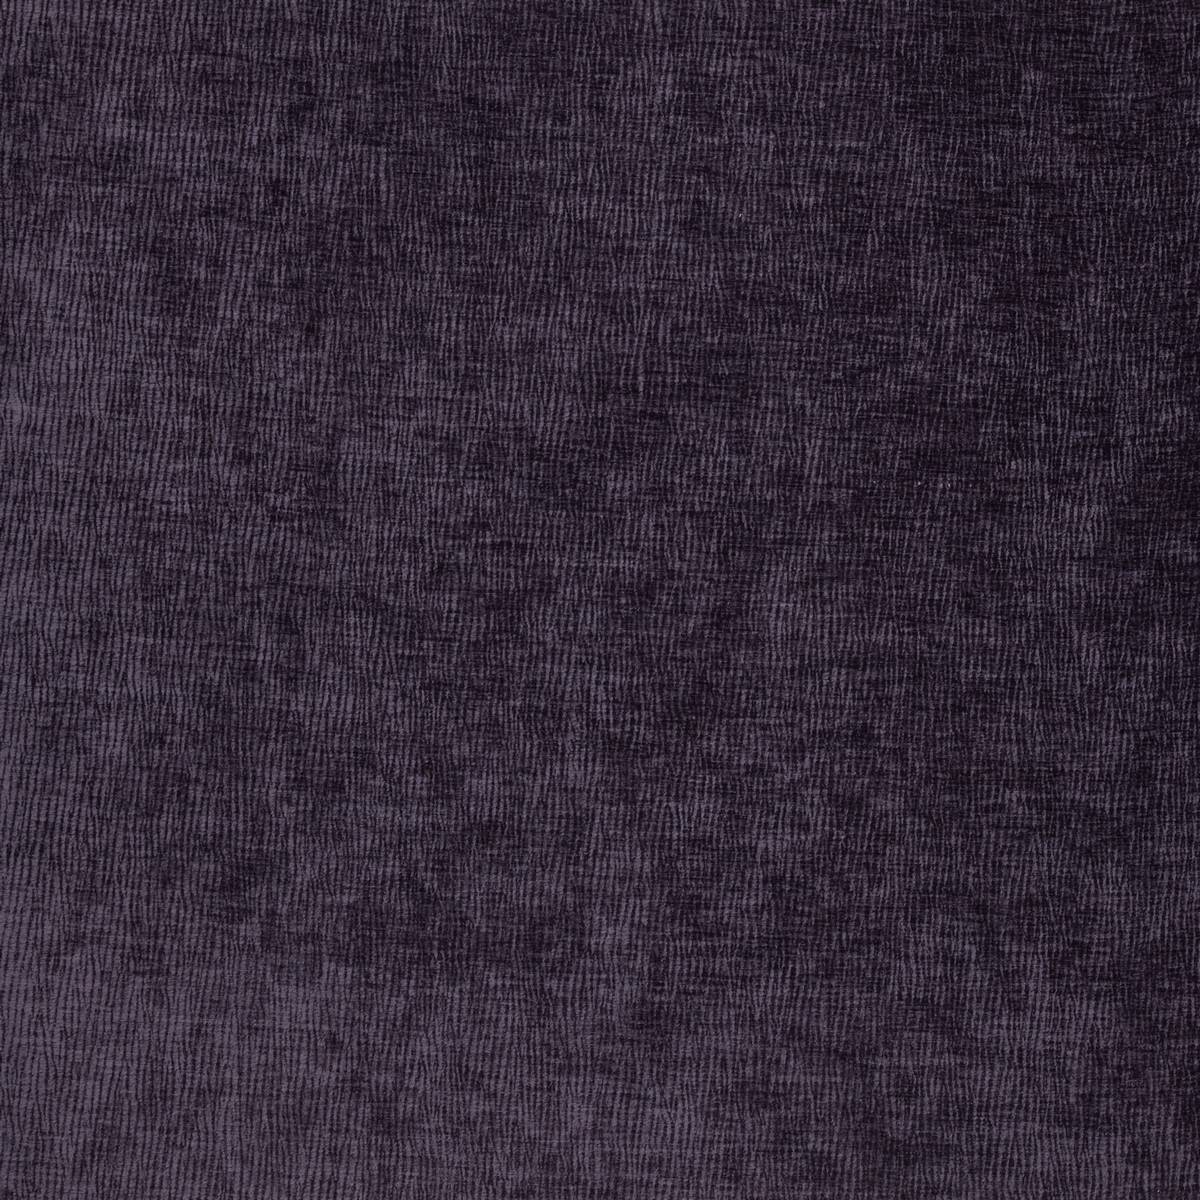 Ashford Blackberry Fabric by iLiv